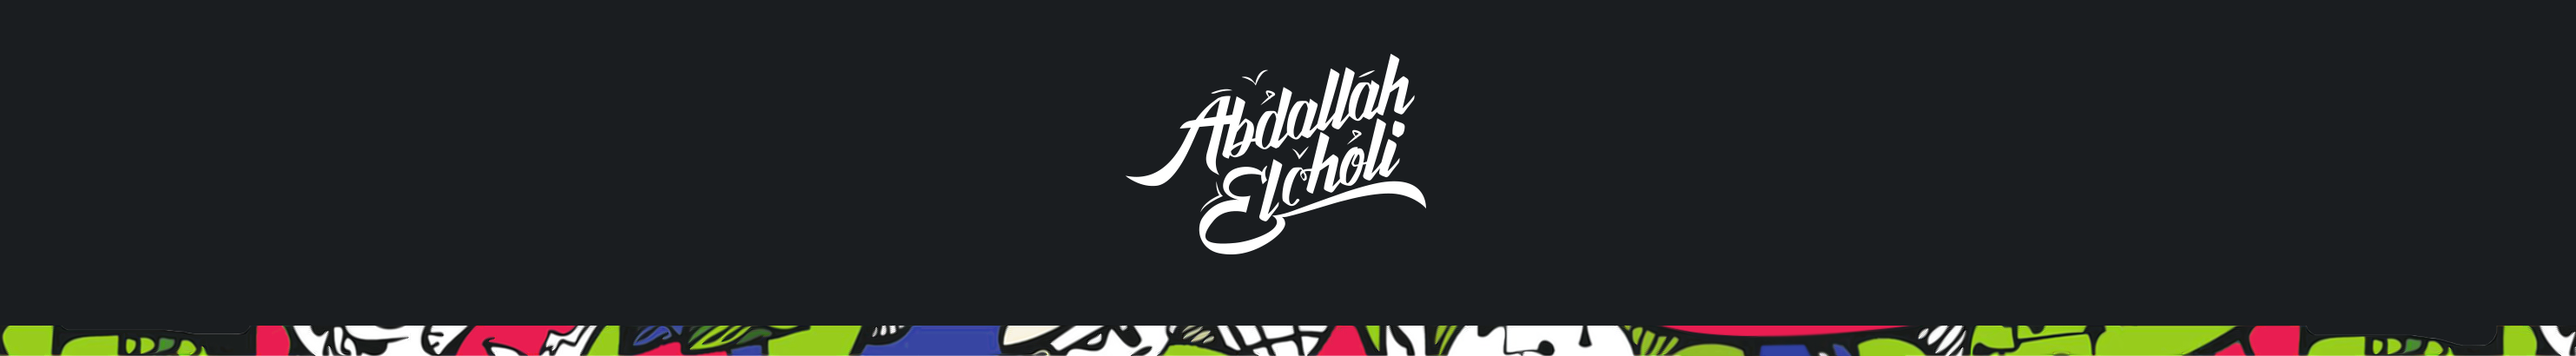 Abdallah El Choli's profile banner